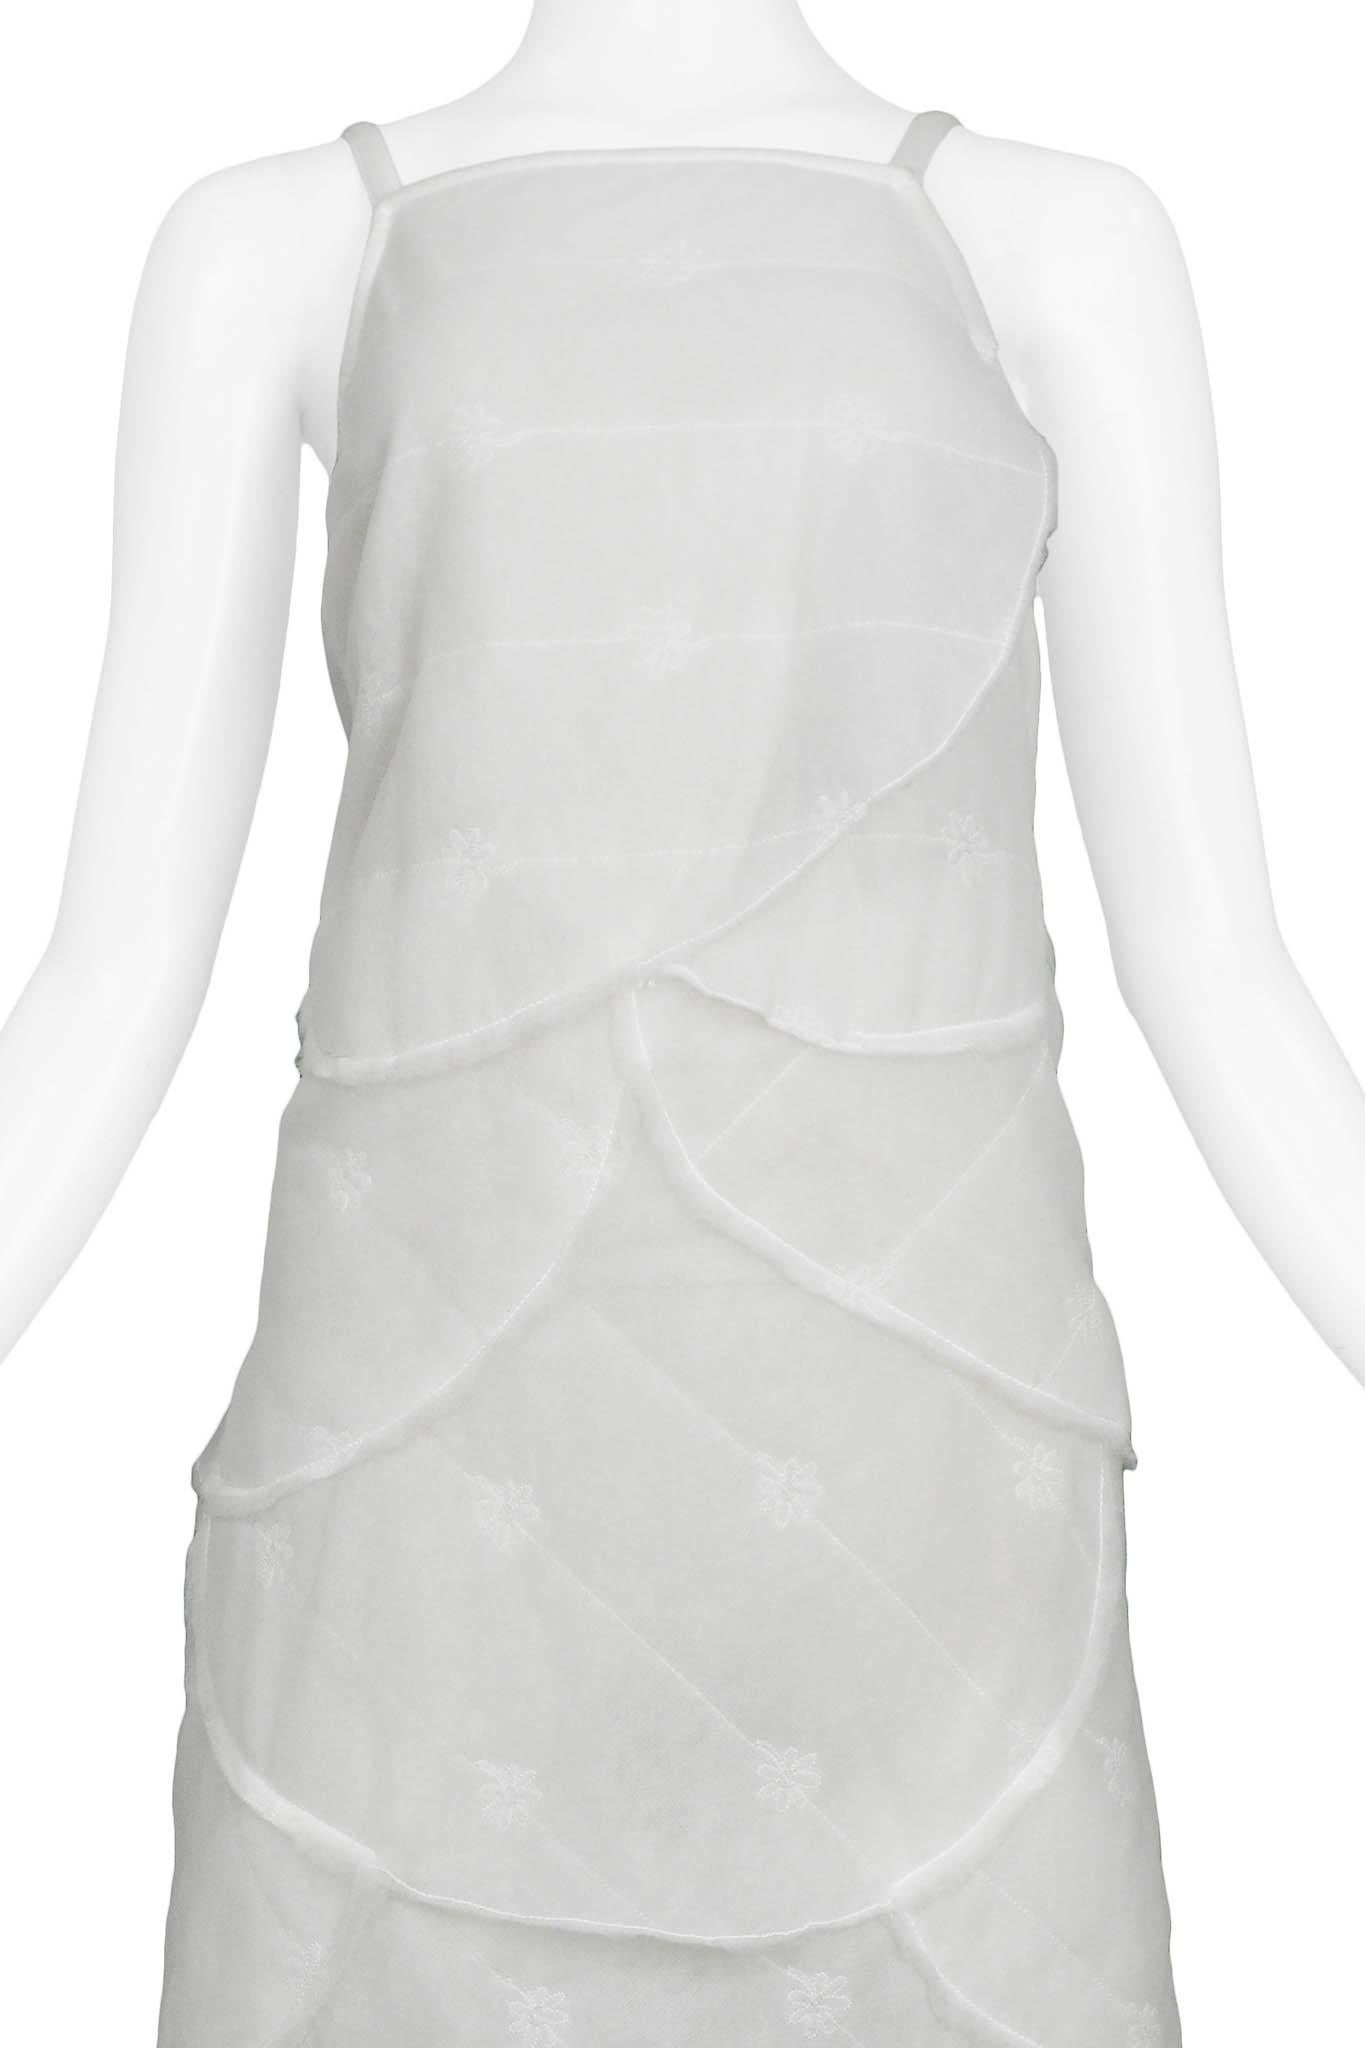 Gray Walter Van Beirendonck White Padded Batting Dress 1999 For Sale